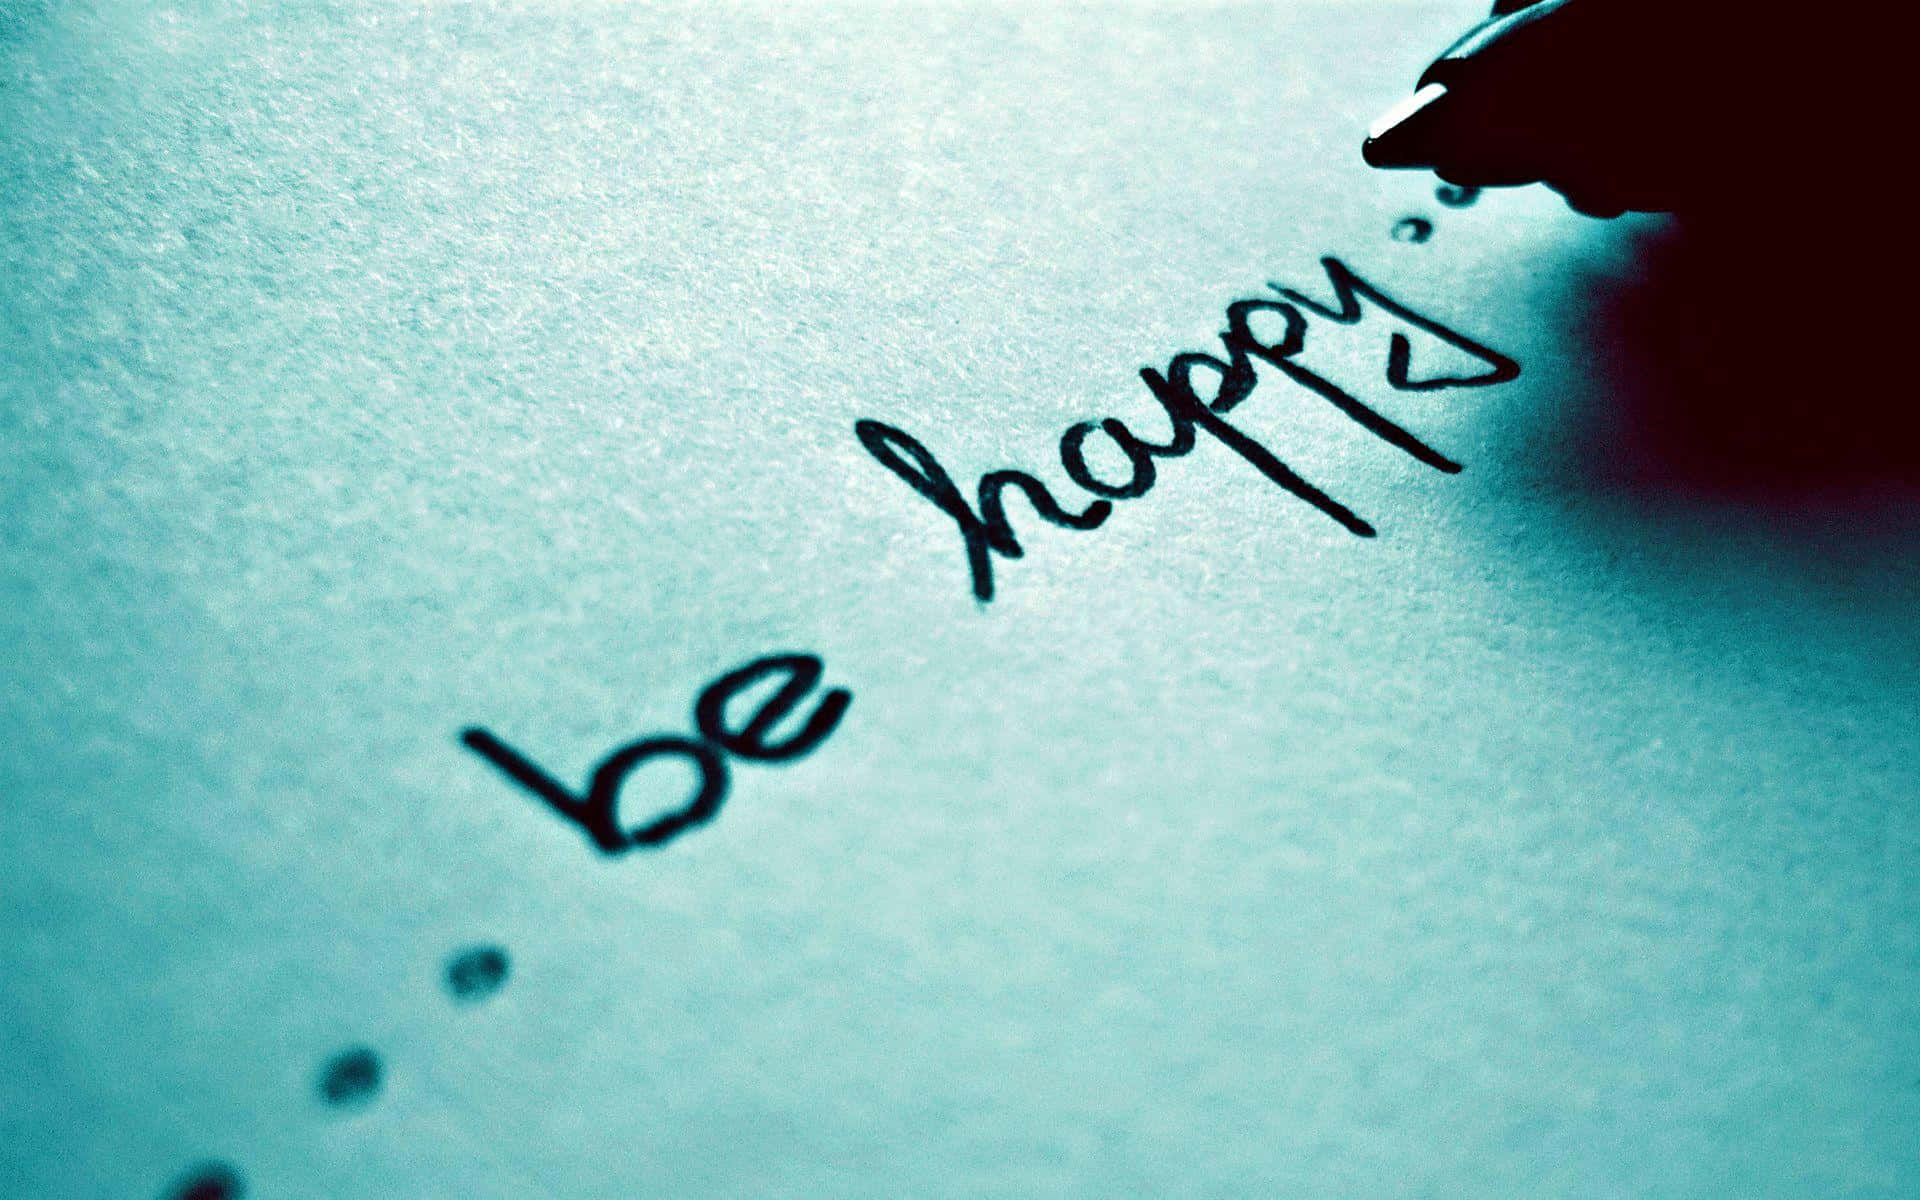 Be Happy Quotes, Be Happy Quotes, Be Happy Quotes, Be Happy Quotes, Be Happy Quotes, Be Happy Quotes, Be Happy Quotes, Be Happy Quotes, Wallpaper